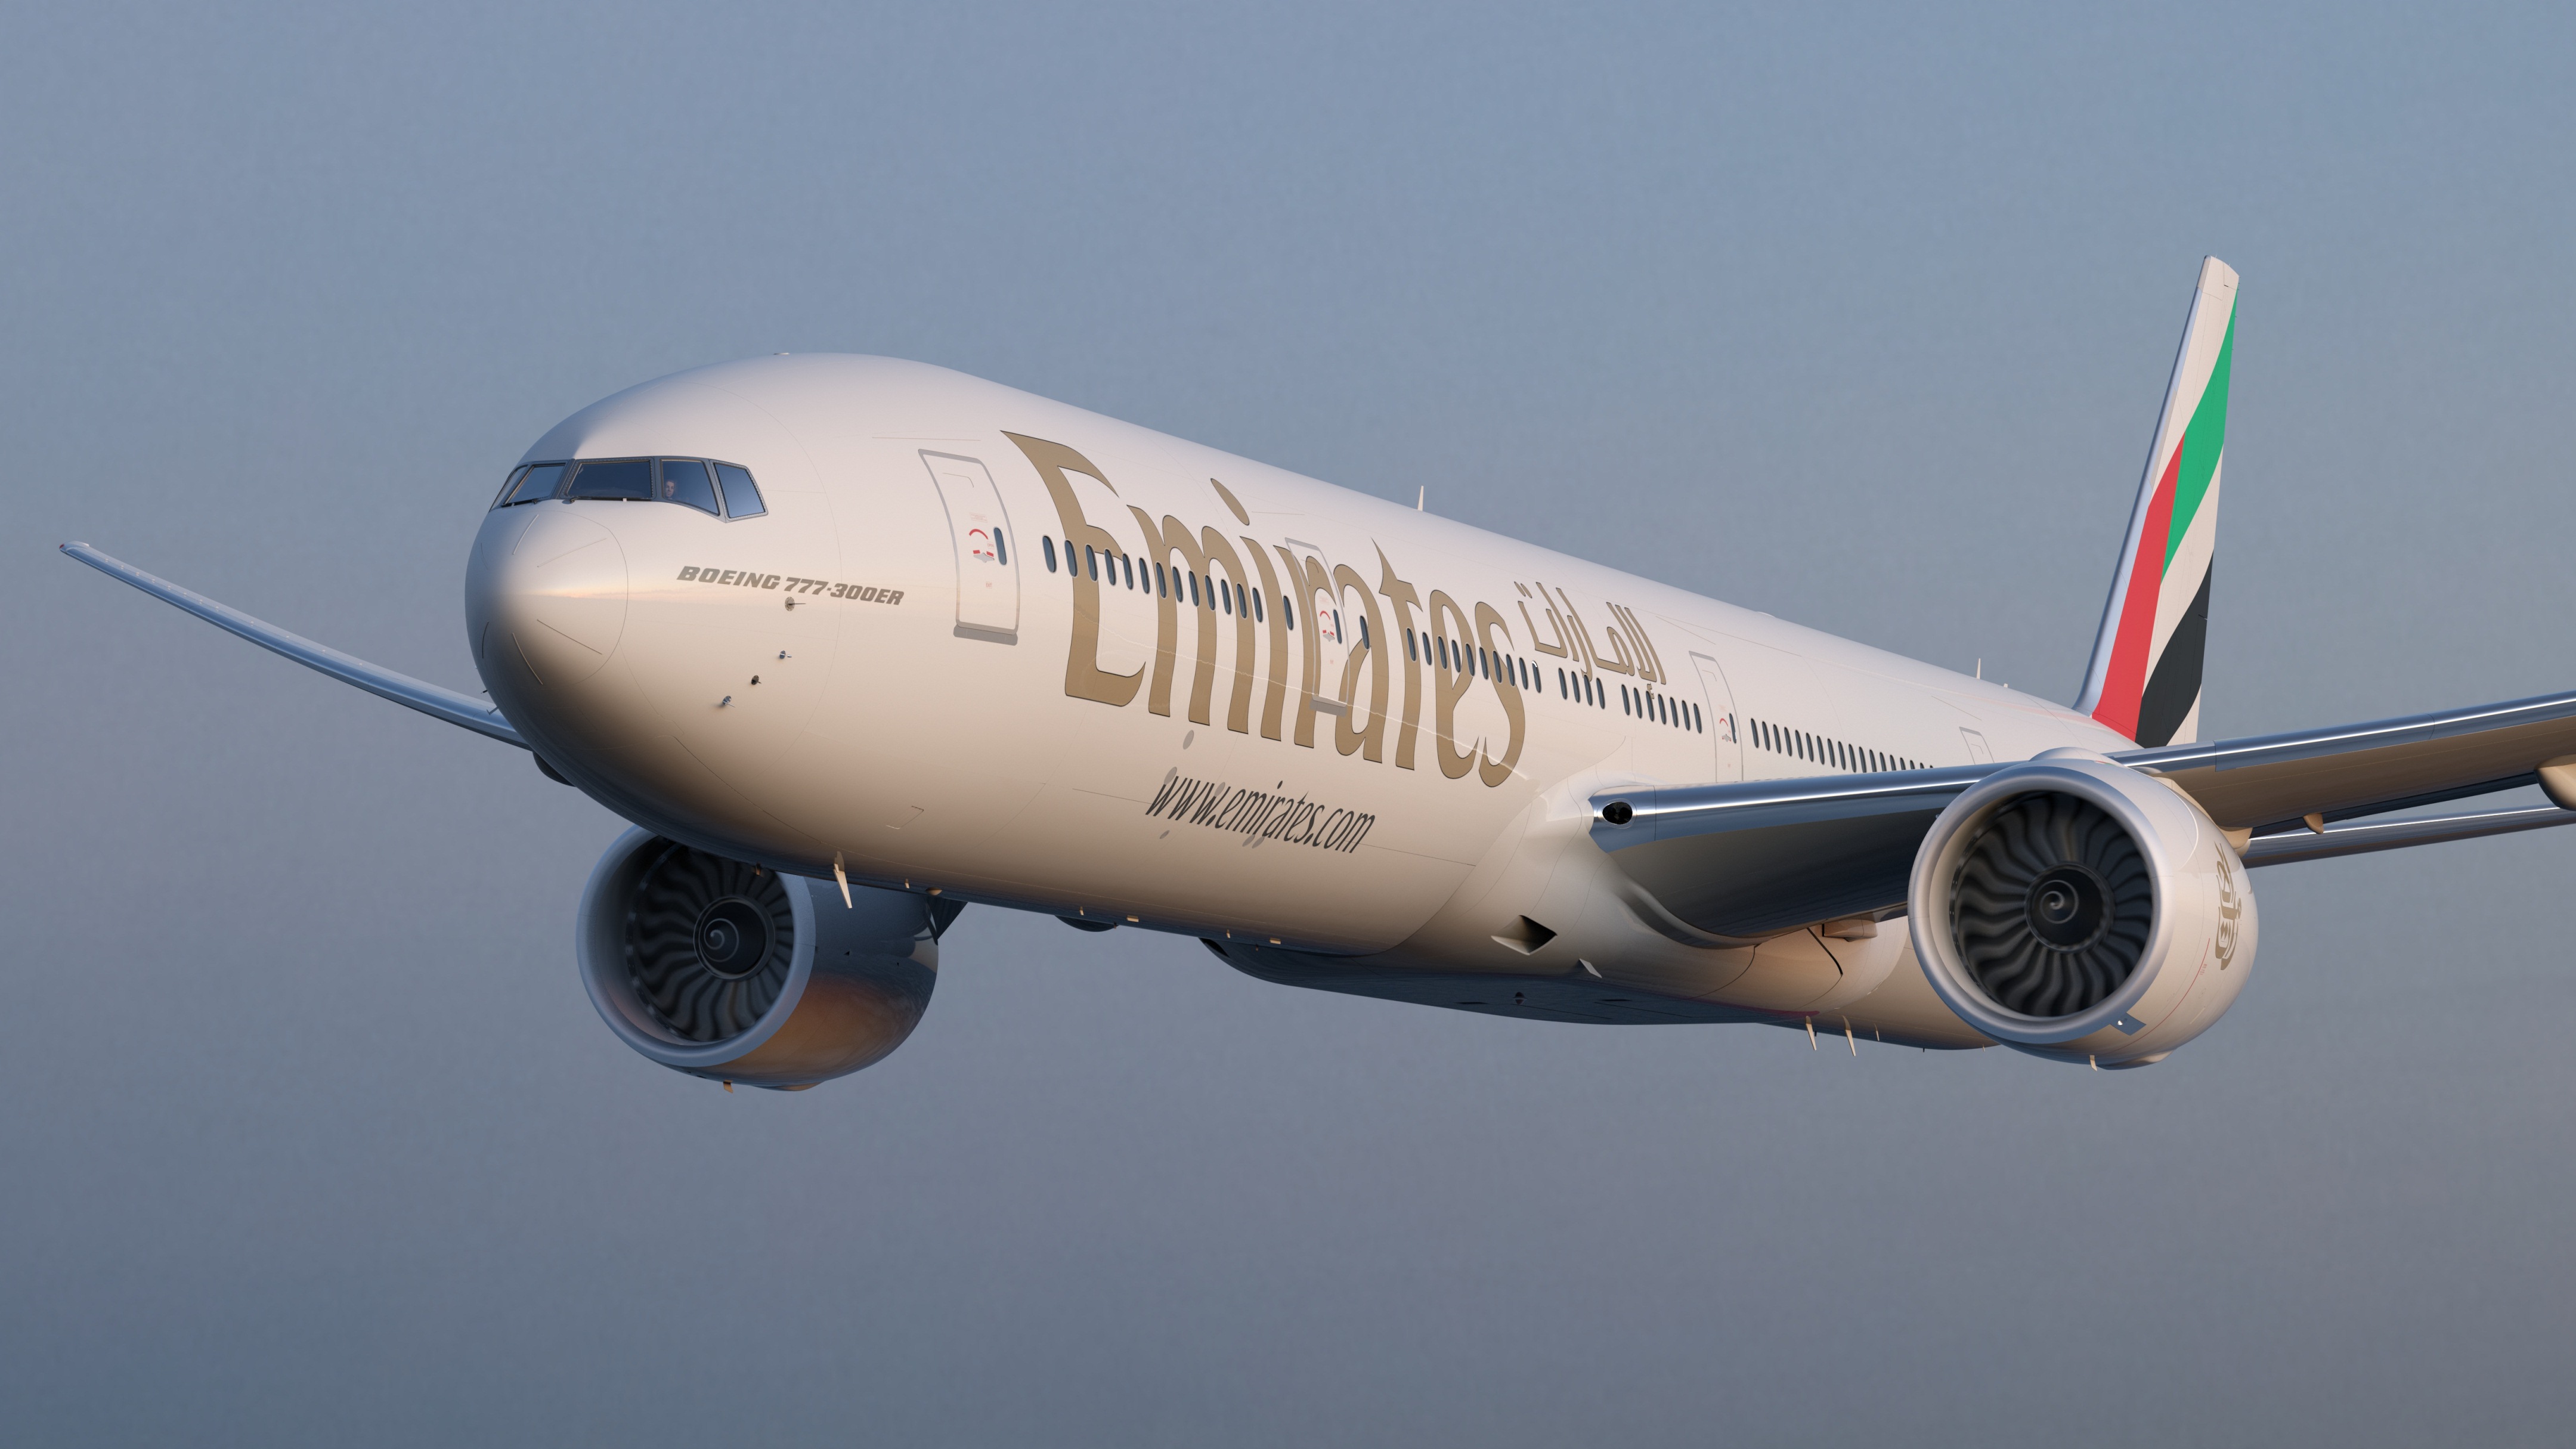 Accordo tra Emirates e Easyjet per il programma frequent flyer Skywards. Possibili molteplici combinazioni di voli